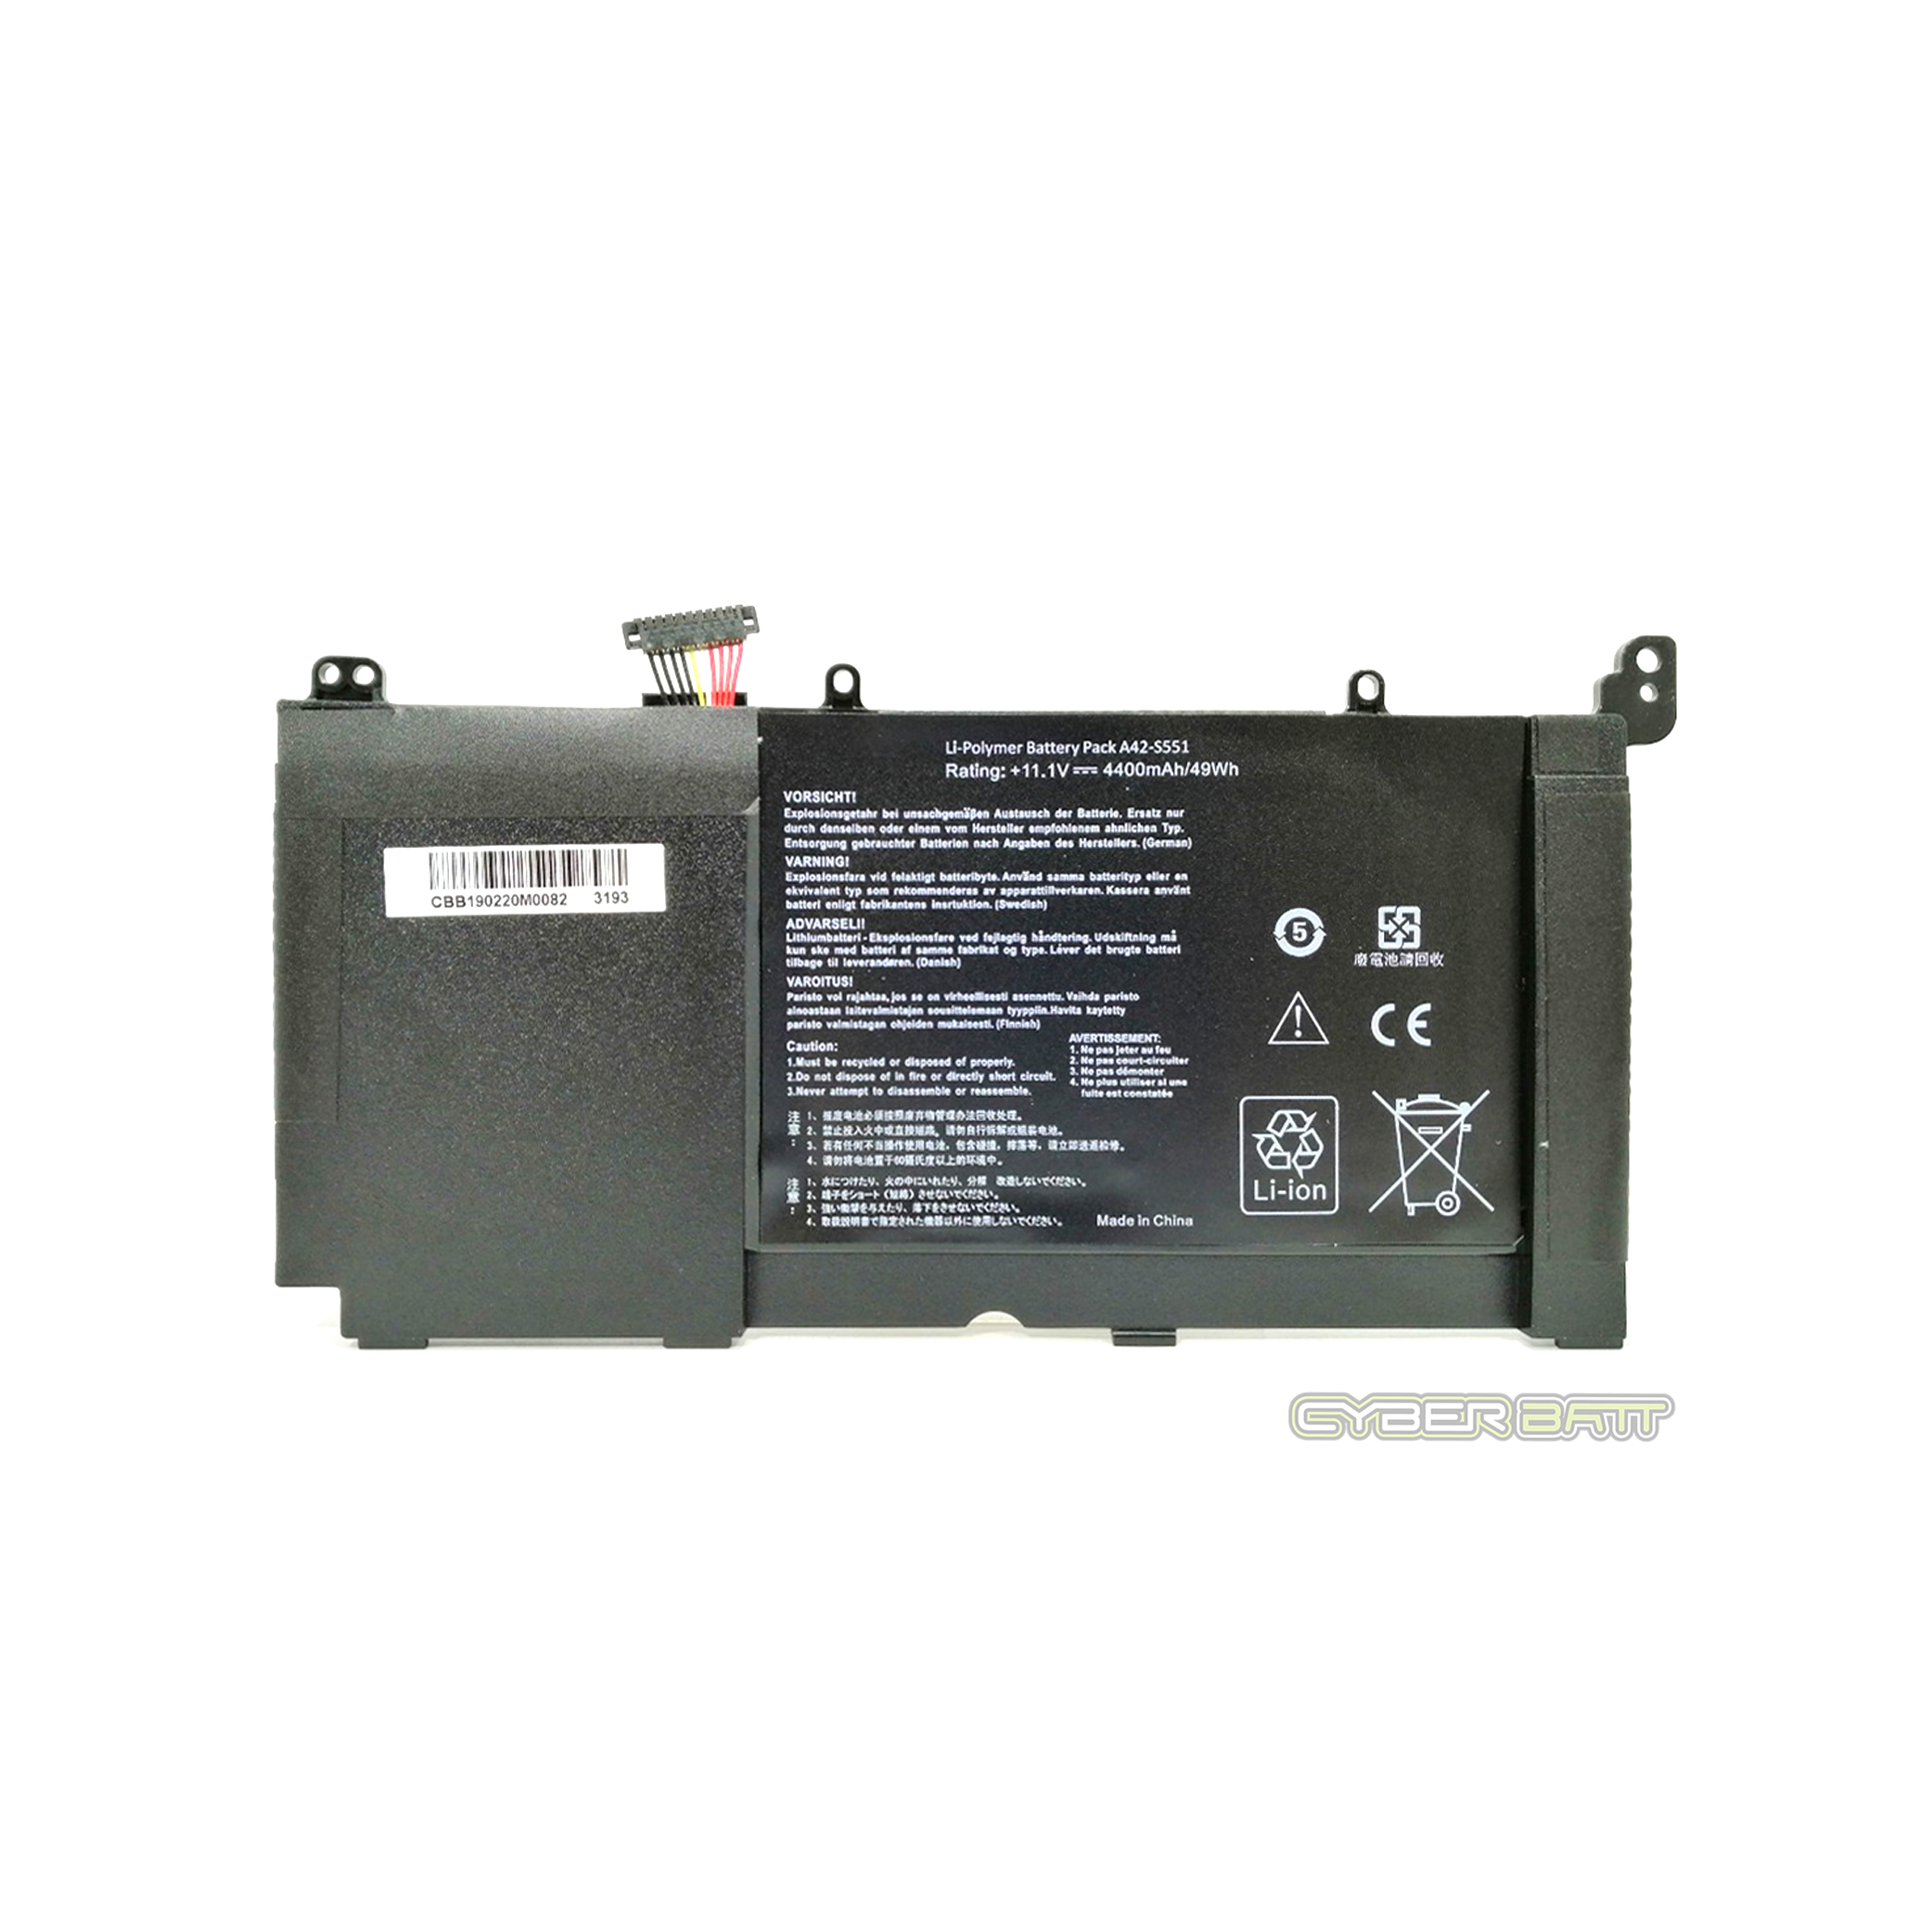 Battery Asus VivoBook S551 R553L R553LN : 11.1V-4400mAh/49Wh Black (CBB)